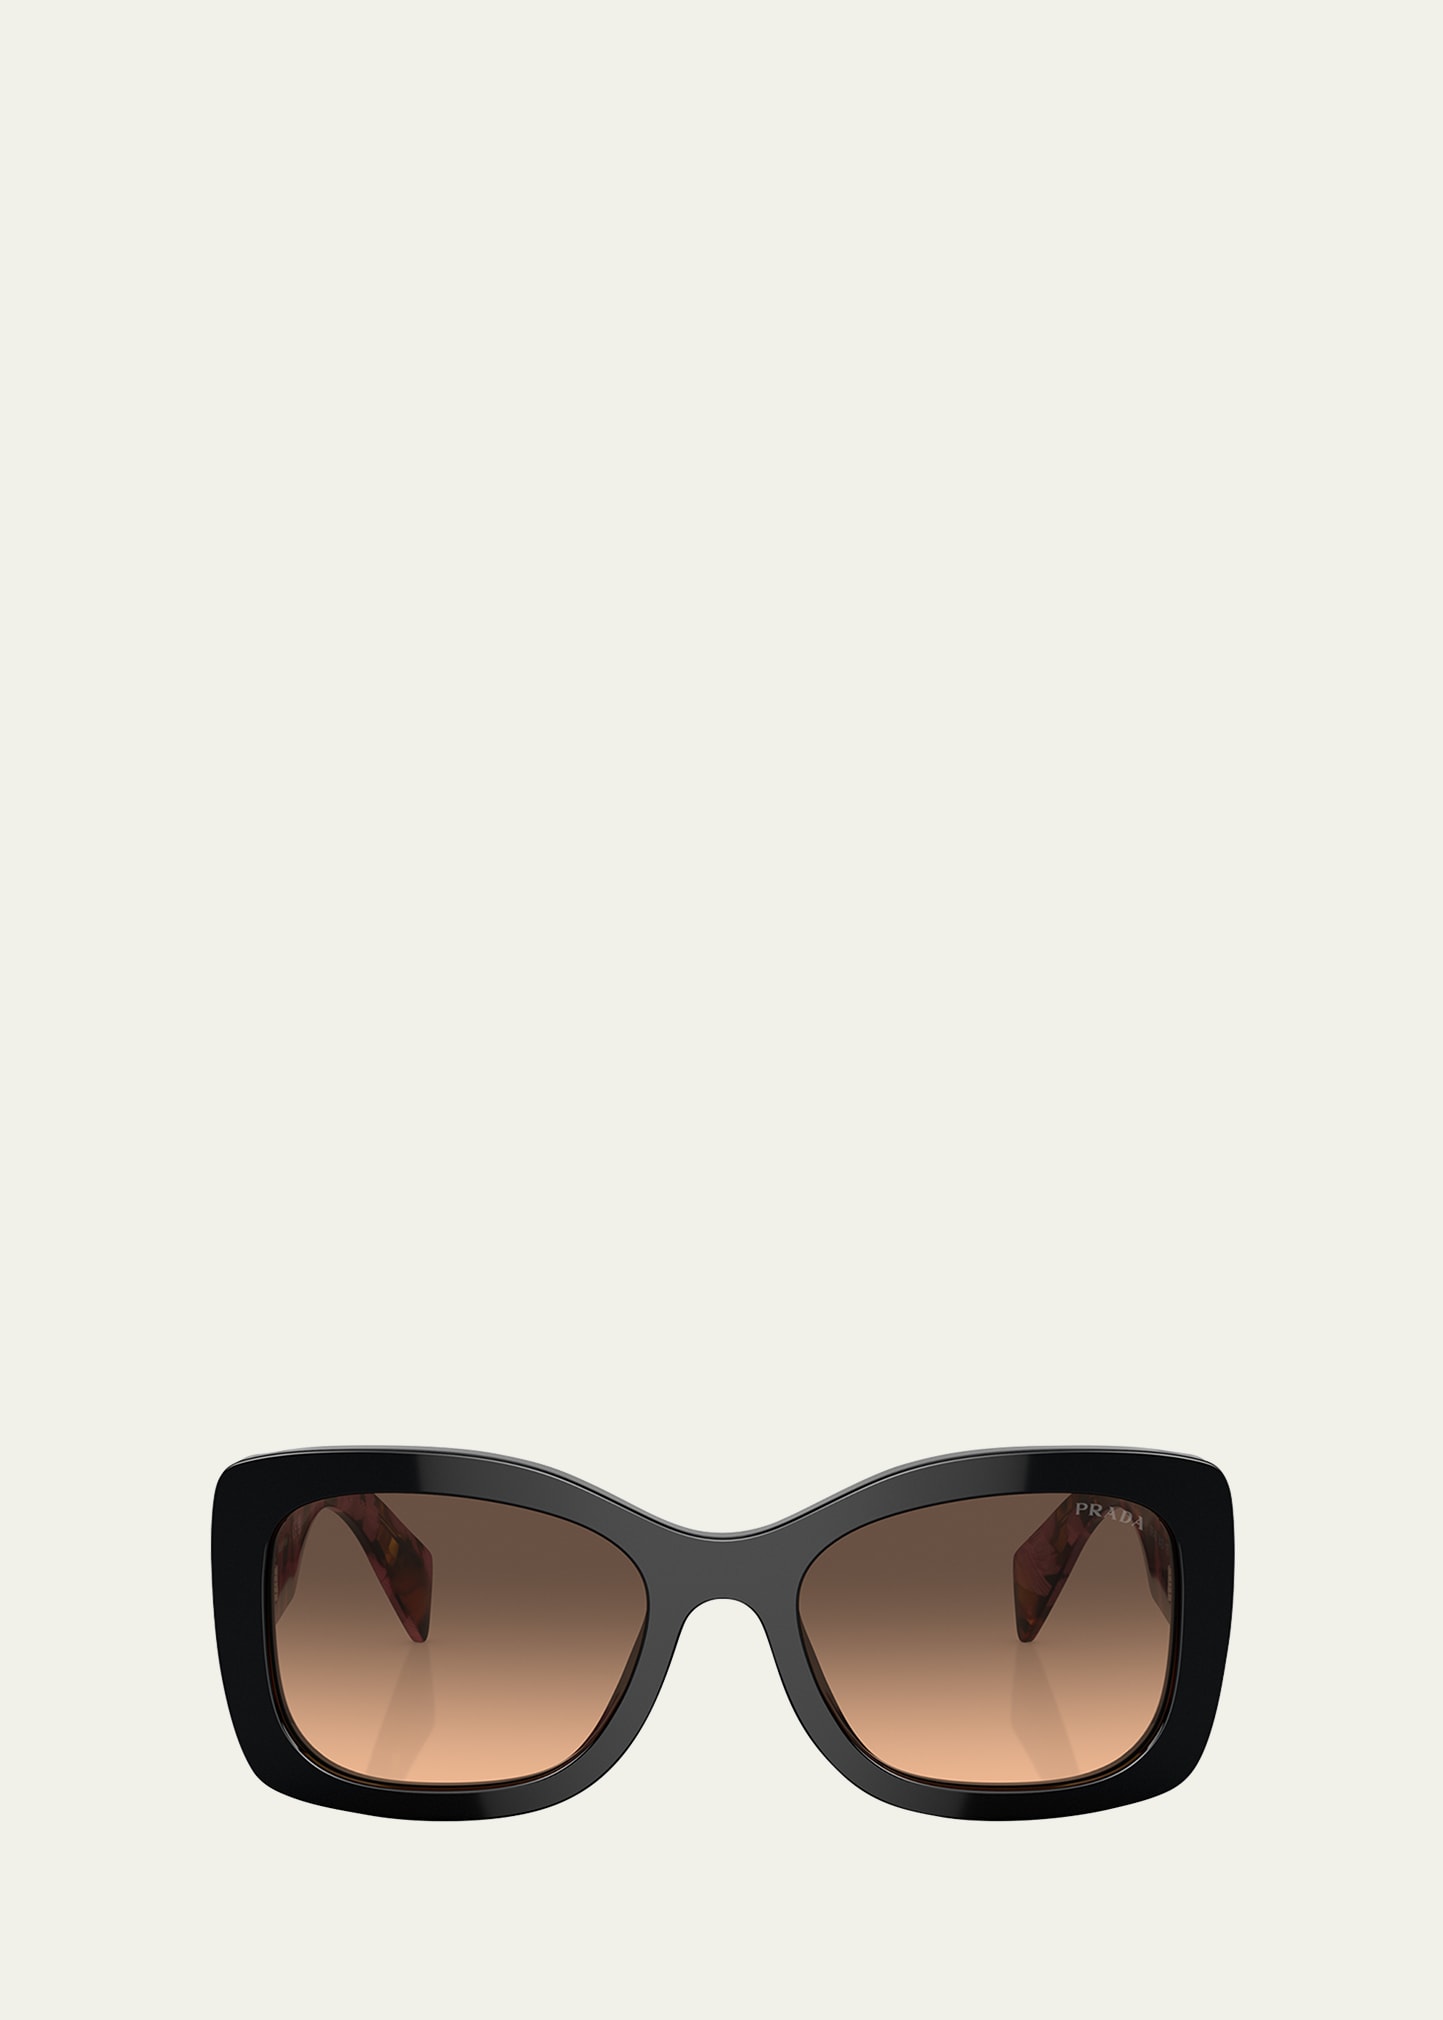 Polarized Designer Sunglasses For Men And Women Frameless, Metal Leg,  Personalized Frames Optica232m From Cfgtre, $33.17